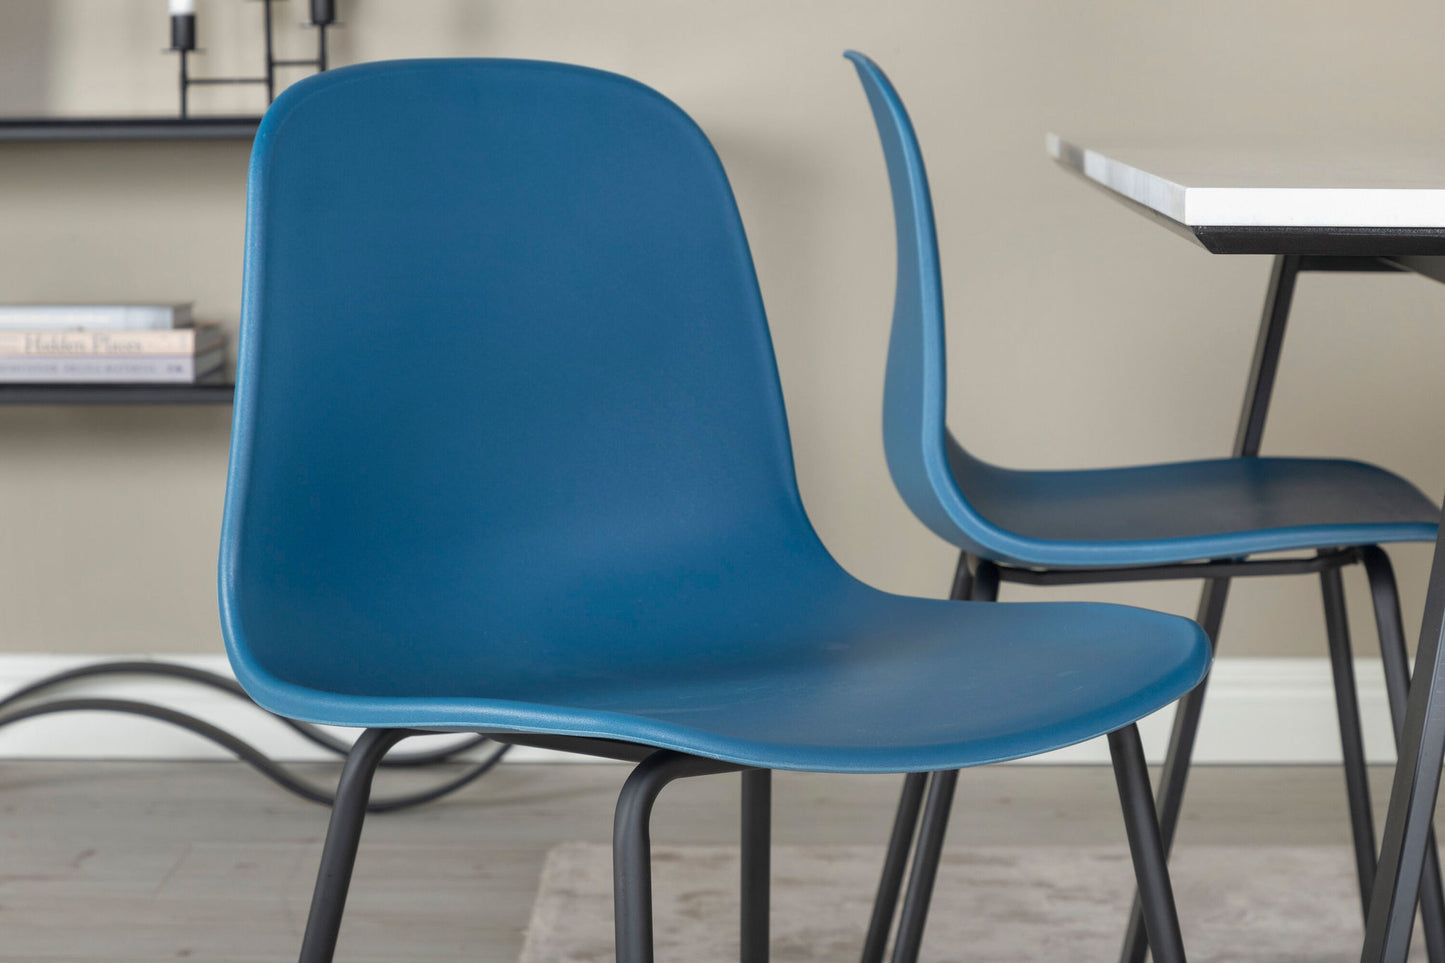 Estelle - Spisebord, 140*90 - Hvid / Sort+Arctic Spisebordsstol - Sorte ben - Blå Plast